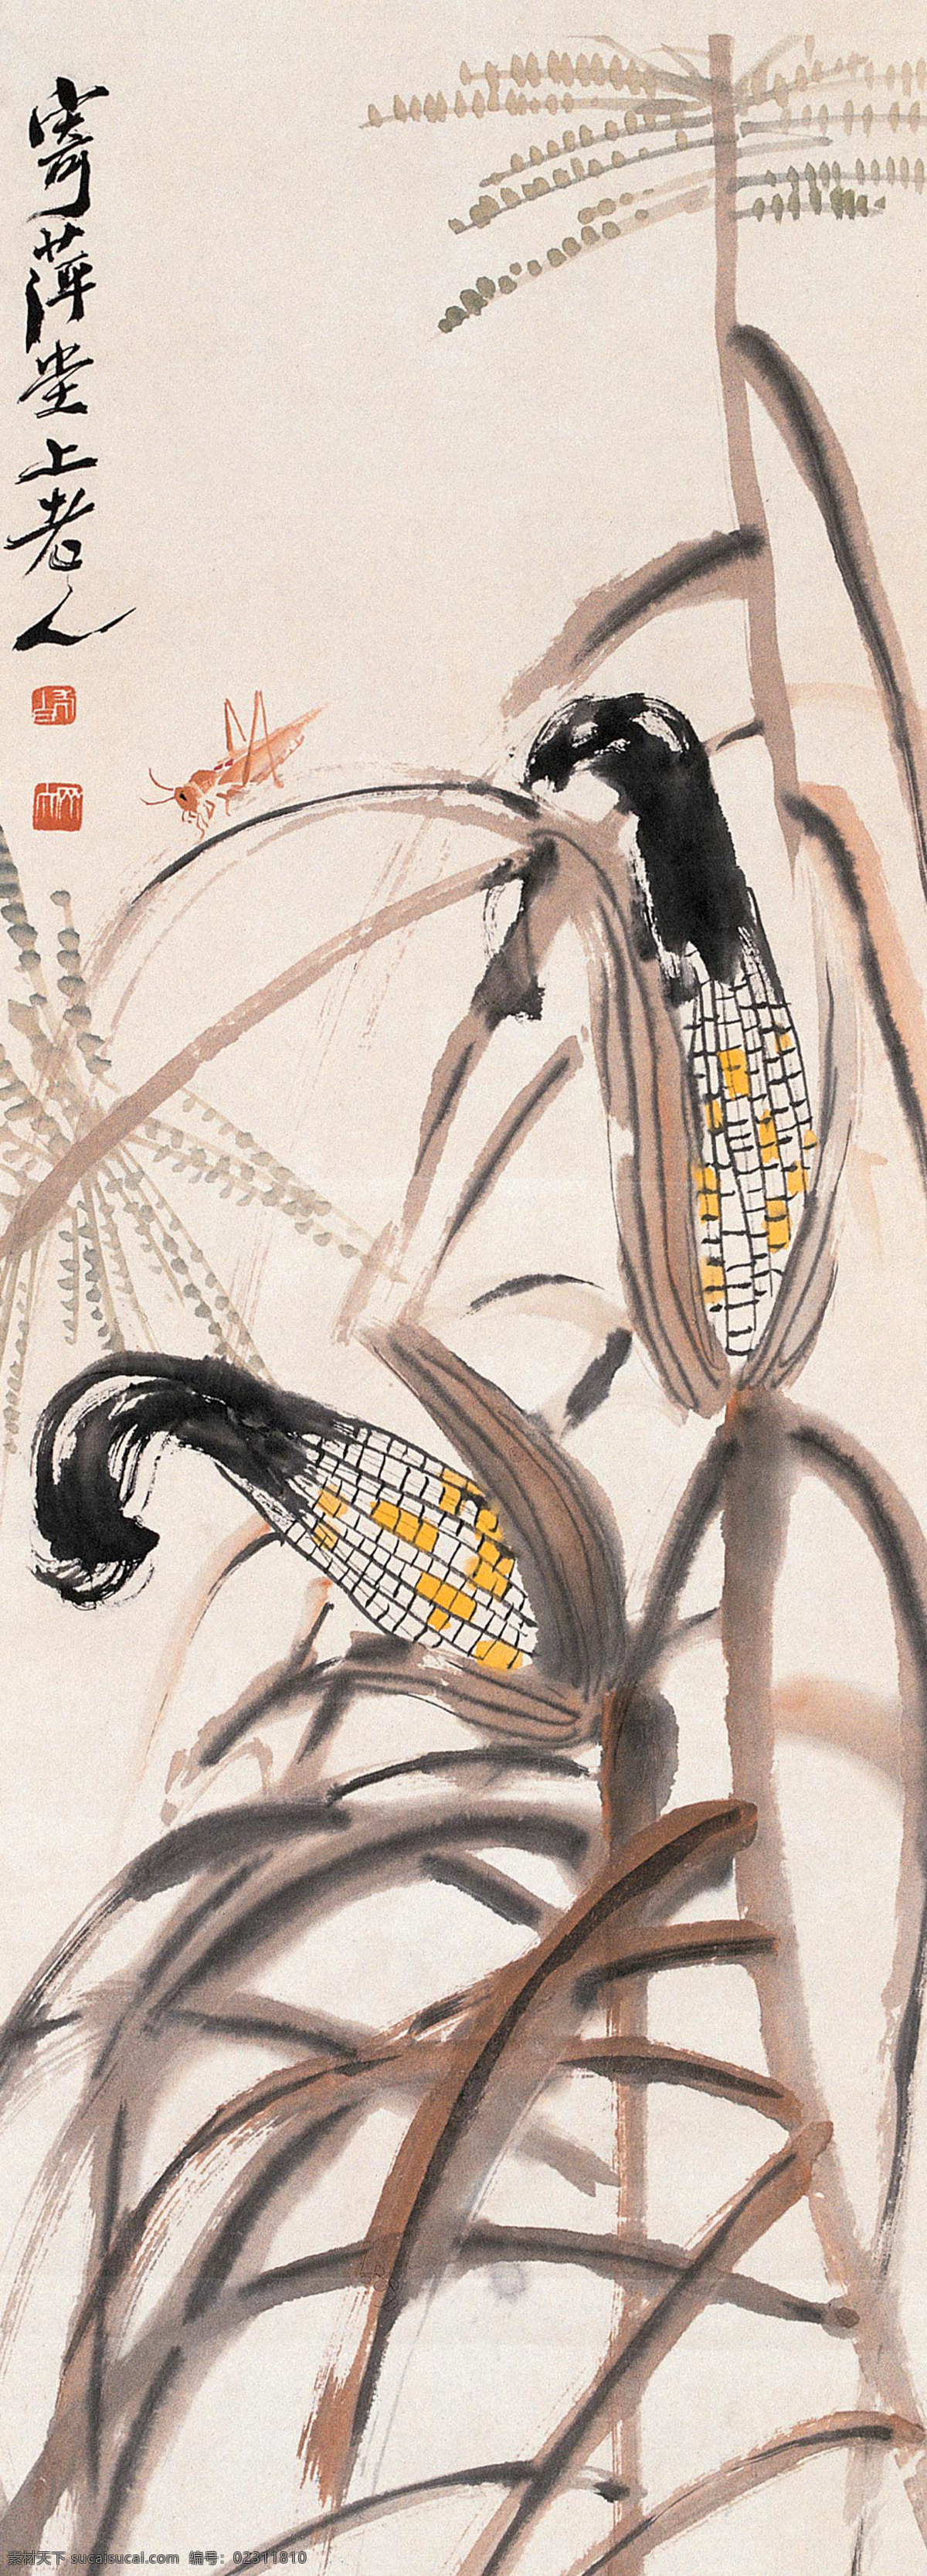 玉米昆虫 国画 齐白石 玉米 包谷 苞米 棒子 蚂蚱 文化艺术 绘画书法 五谷 果蔬